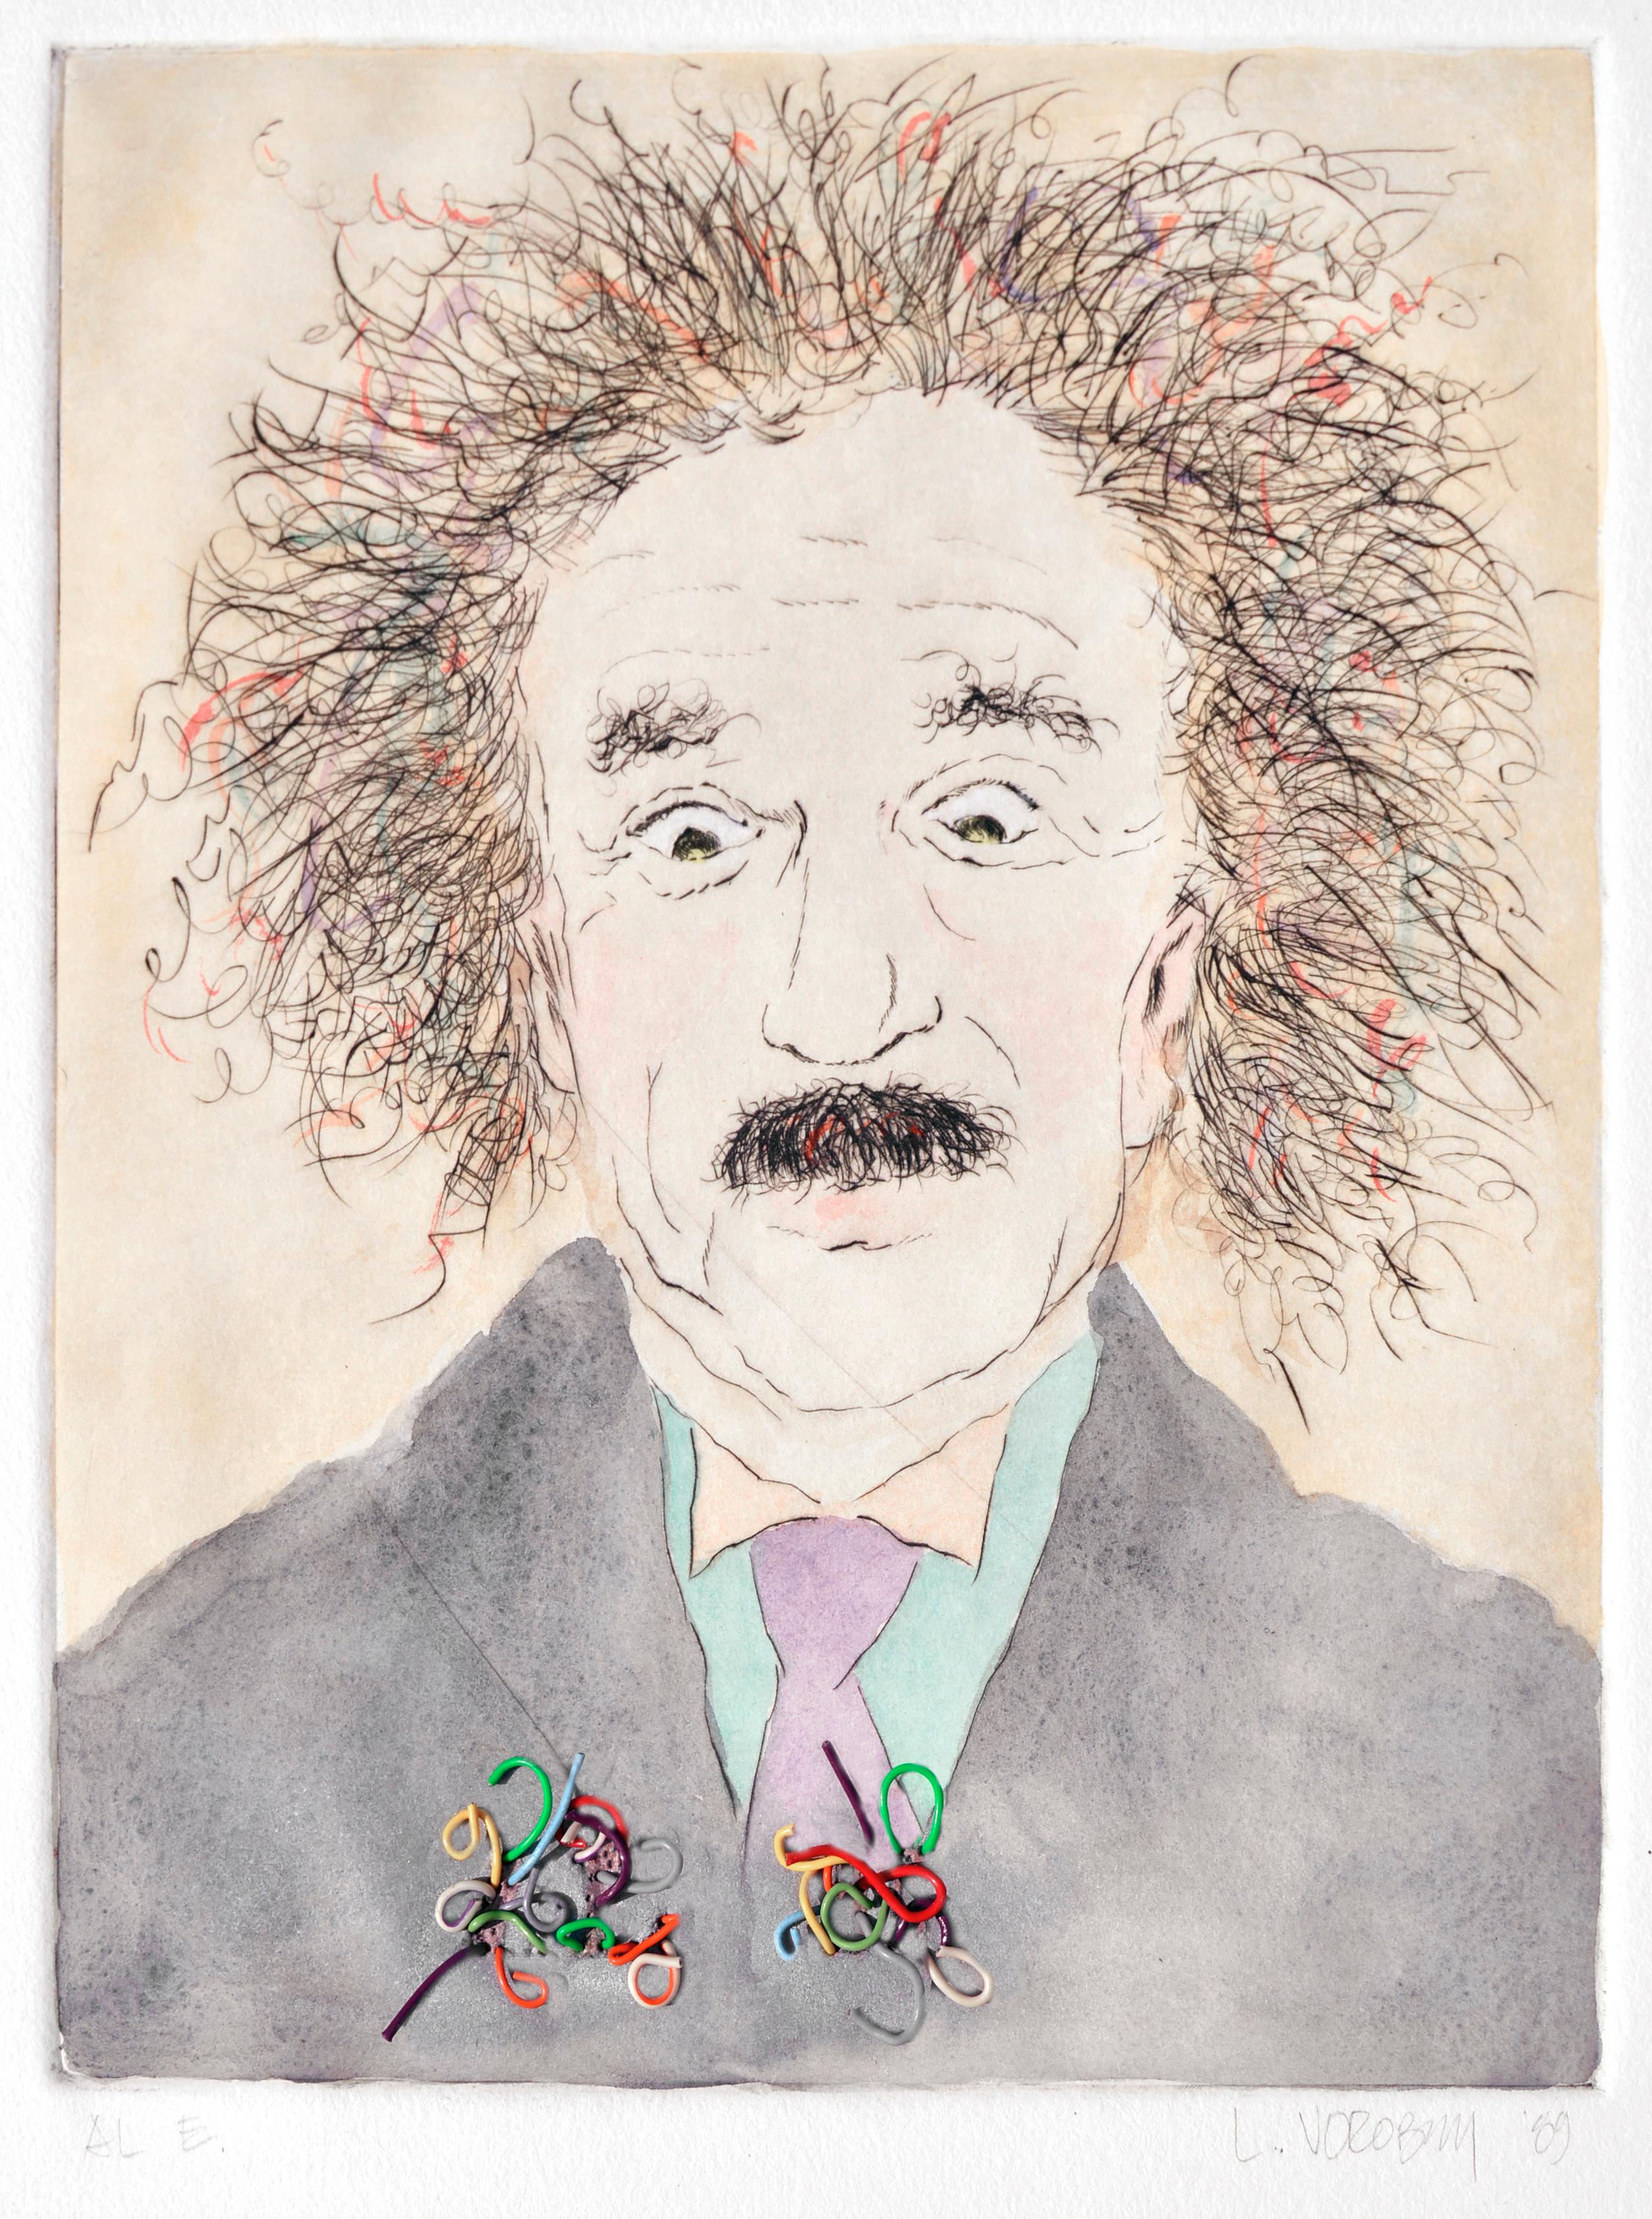 Portrait of Albert Einstein with Multi-Colored Wires  - Print by Lilya Vorobey